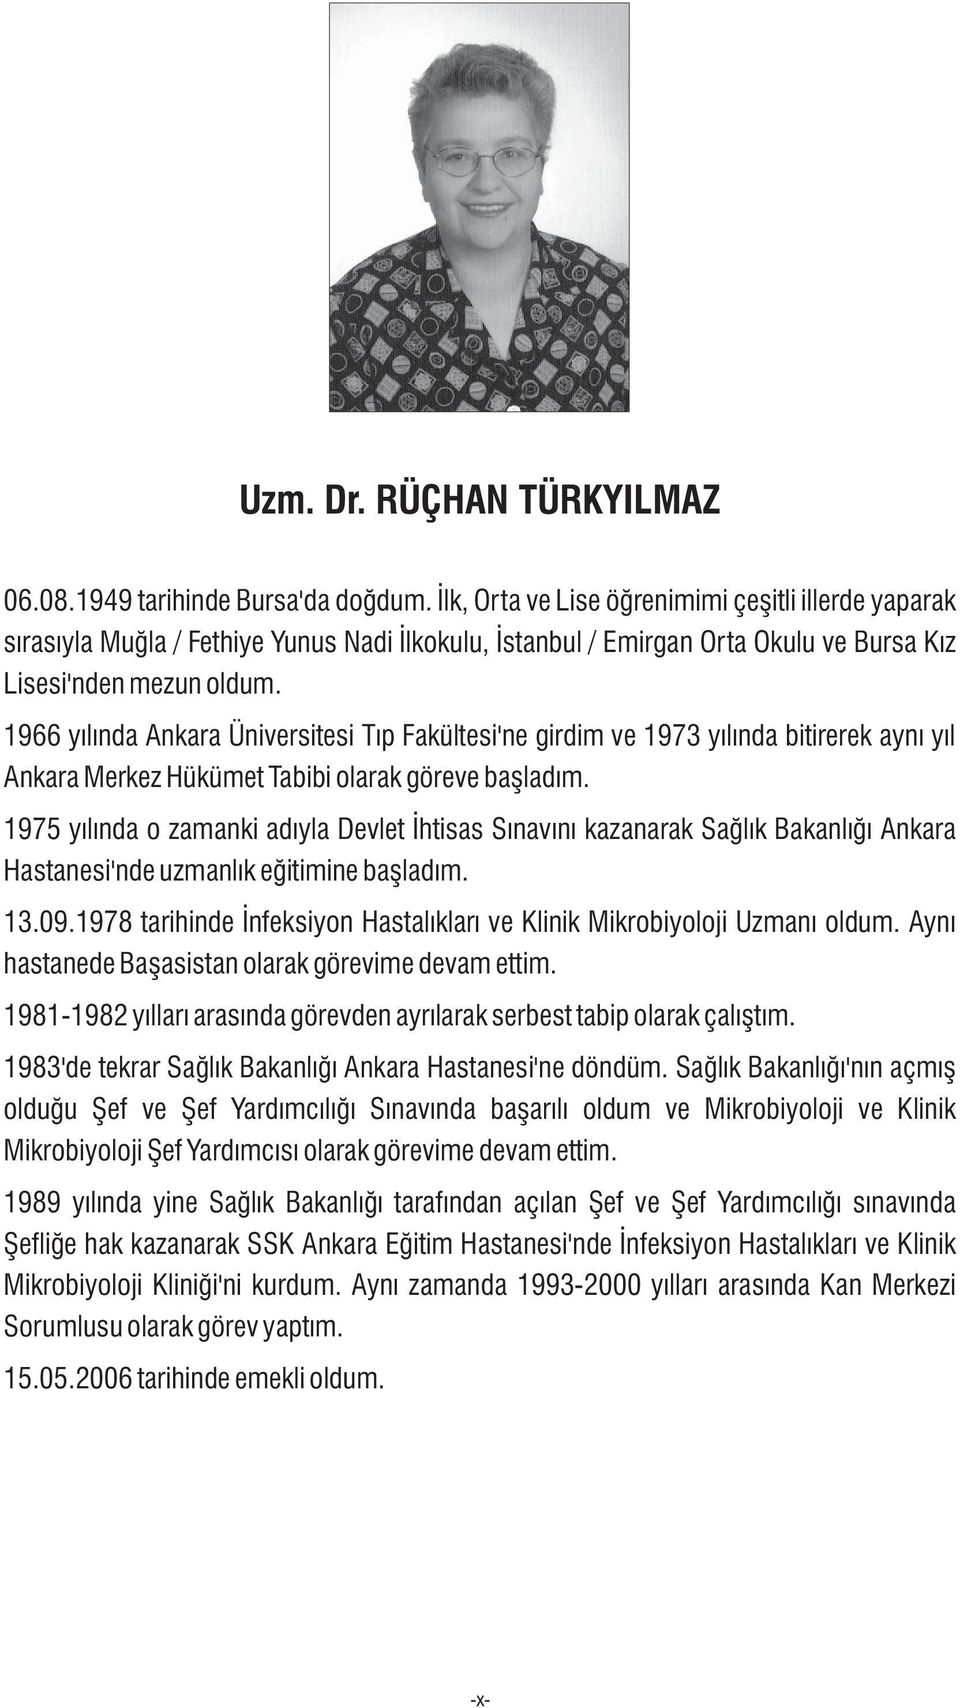 966 yýlýnda Ankara Üniversitesi Týp Fakültesi'ne girdim ve 973 yýlýnda bitirerek ayný yýl Ankara Merkez Hükümet Tabibi olarak göreve baþladým.